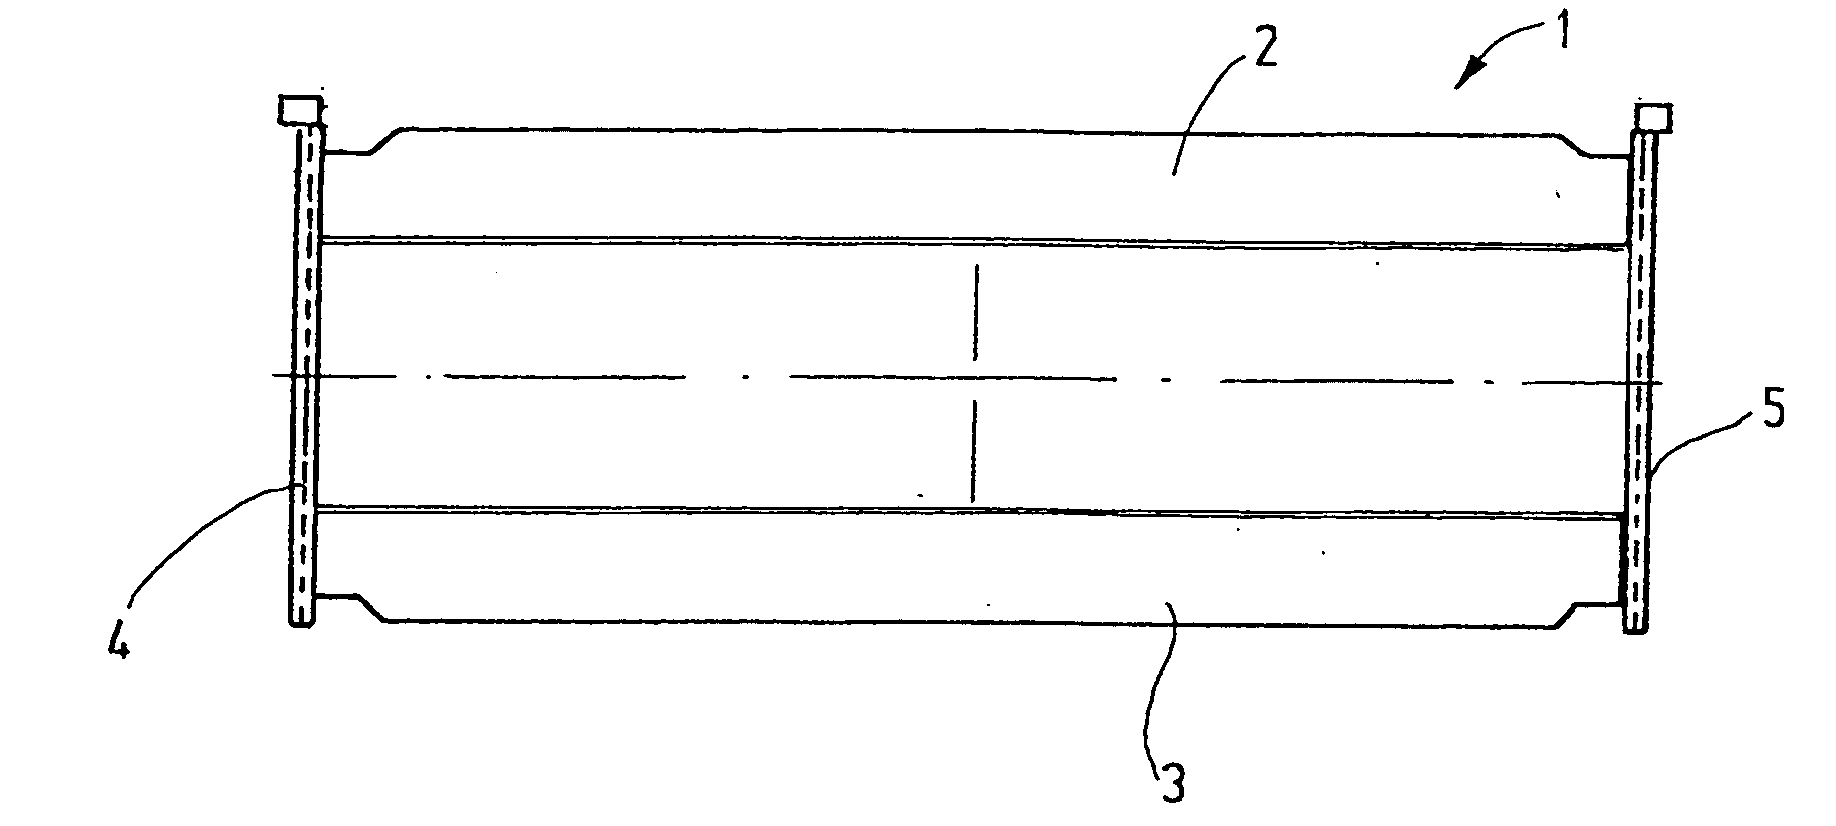 Heddle shaft with novel corner connector